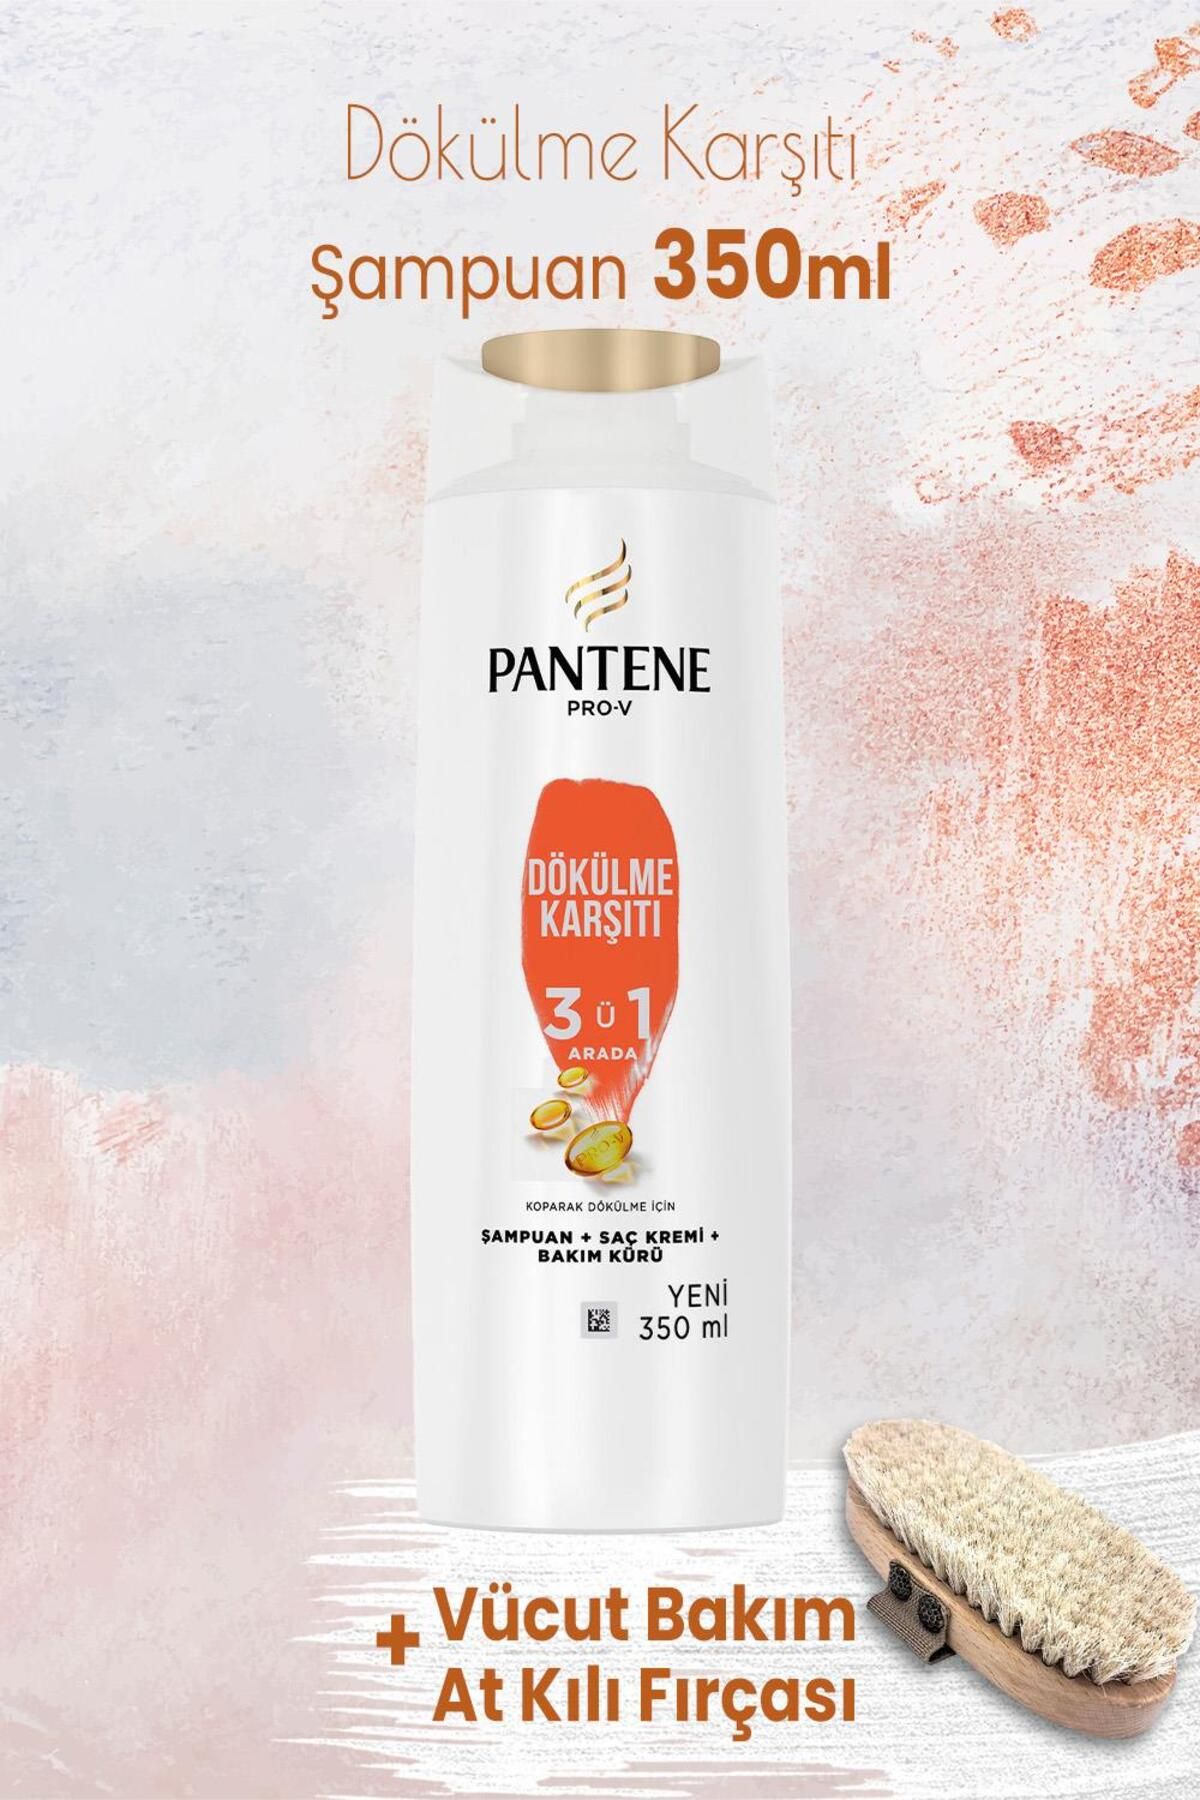 Pantene Şampuan Pro-V Dökülme Karşıtı 3' ü 1 Arada 350 ml ve Vücut Bakım At Kılı Fırçası